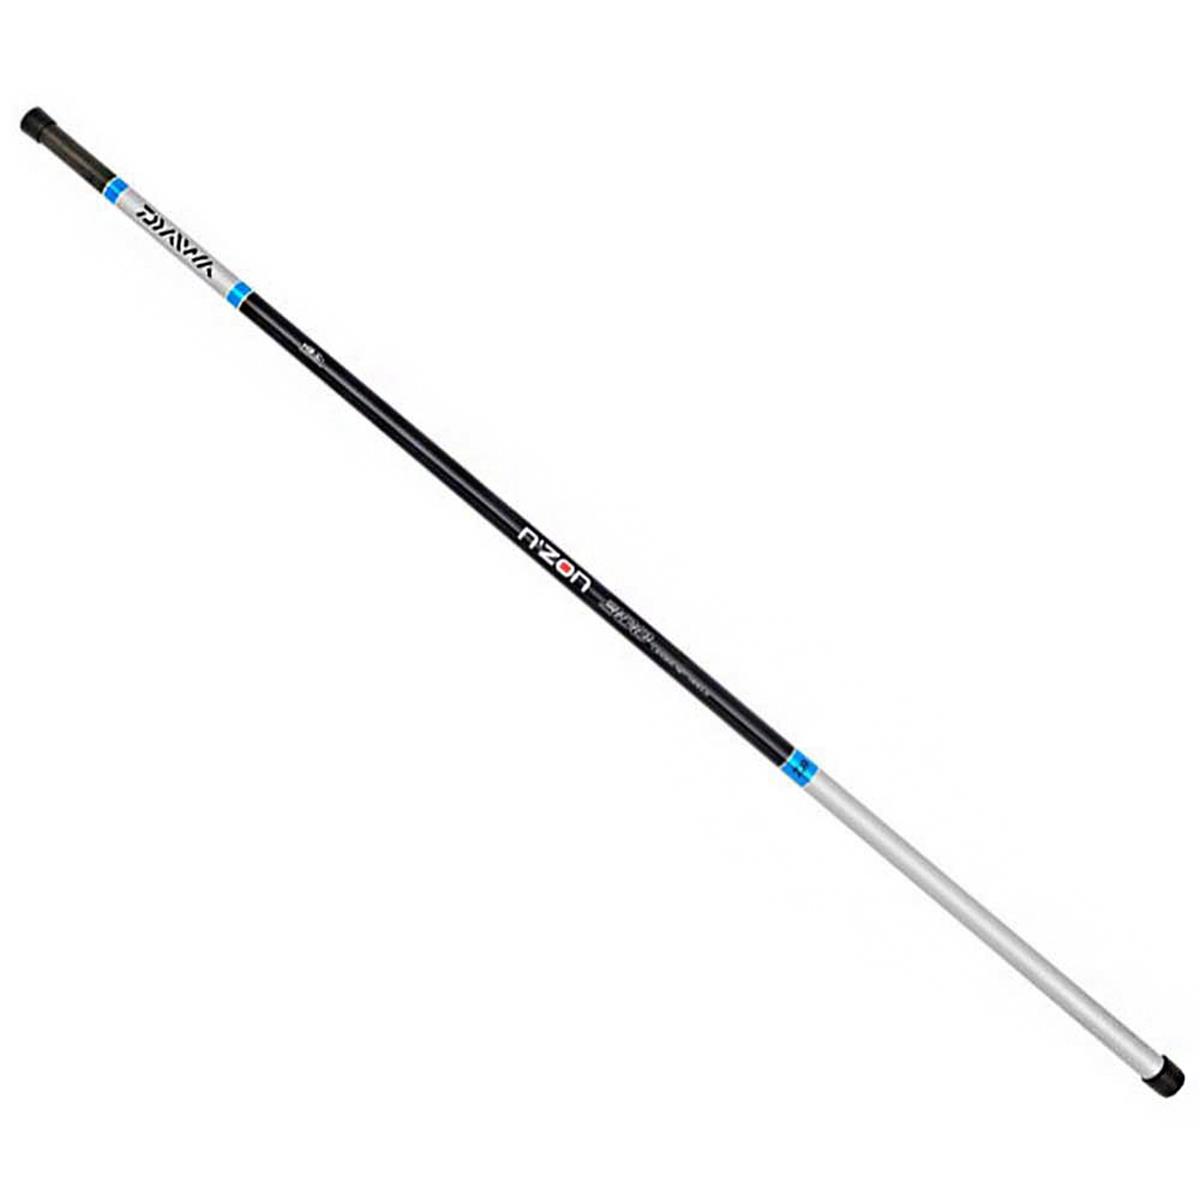 Ручка подсачека N'ZON LANDING NET HANDLE 5.0 m  N´ZON ручка paul masquin деревянная сверхпрочная 140 см